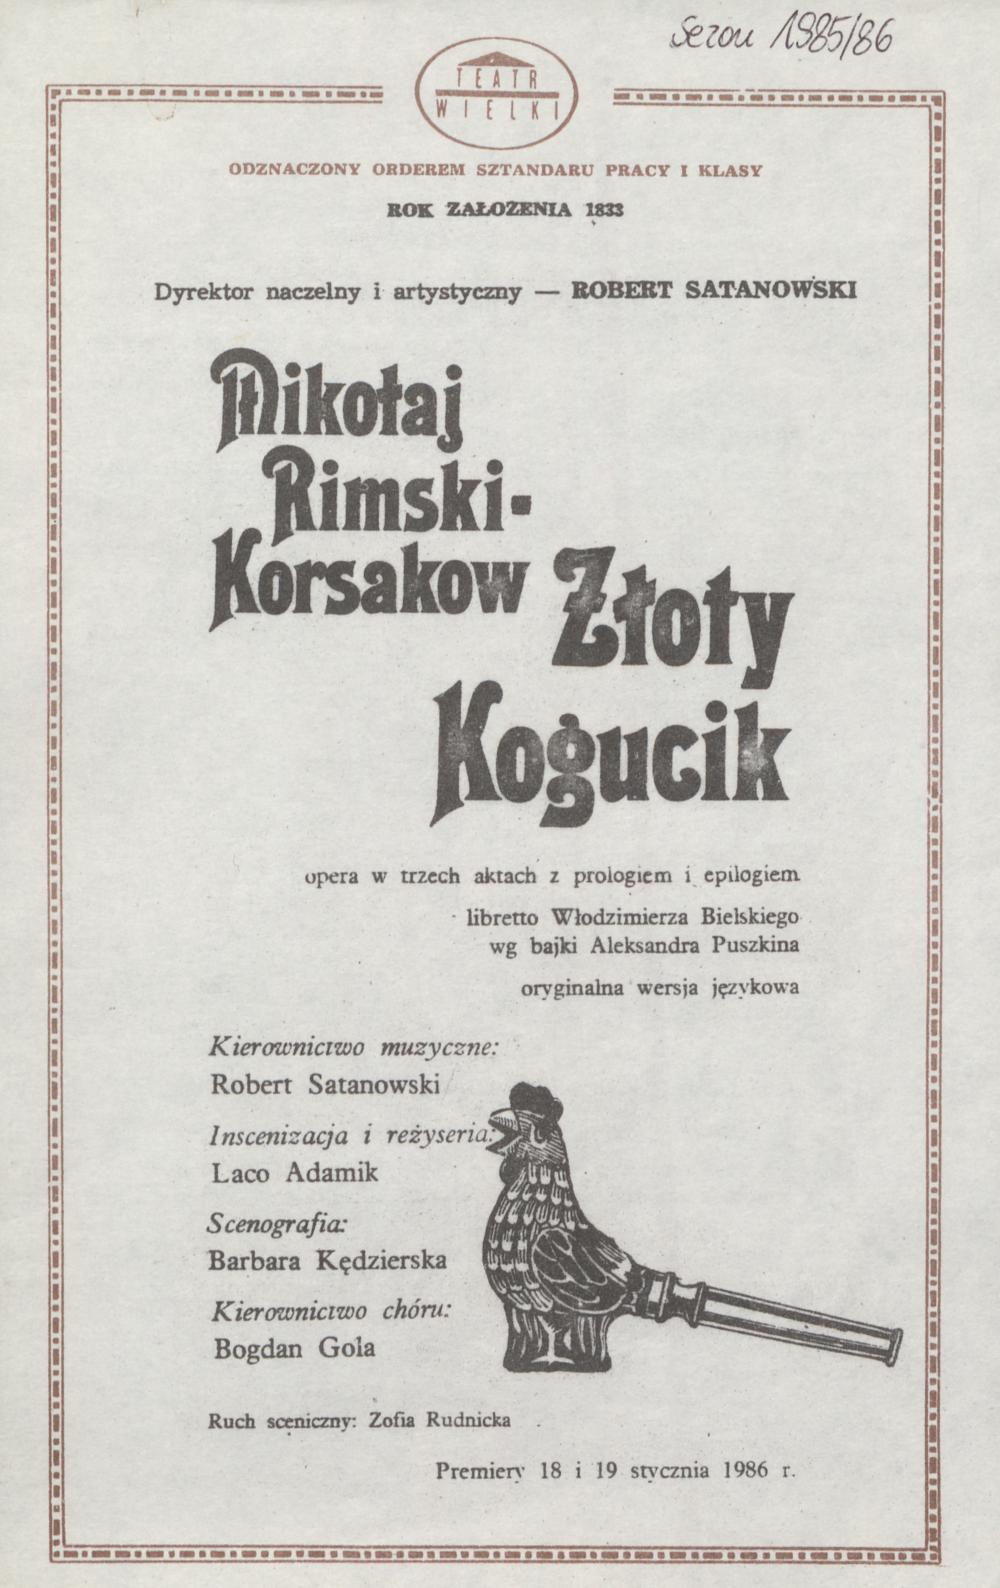 Wkładka premierowa I „Złoty kogucik” Mikołaj Rimski-Korsakow 18-01-1986